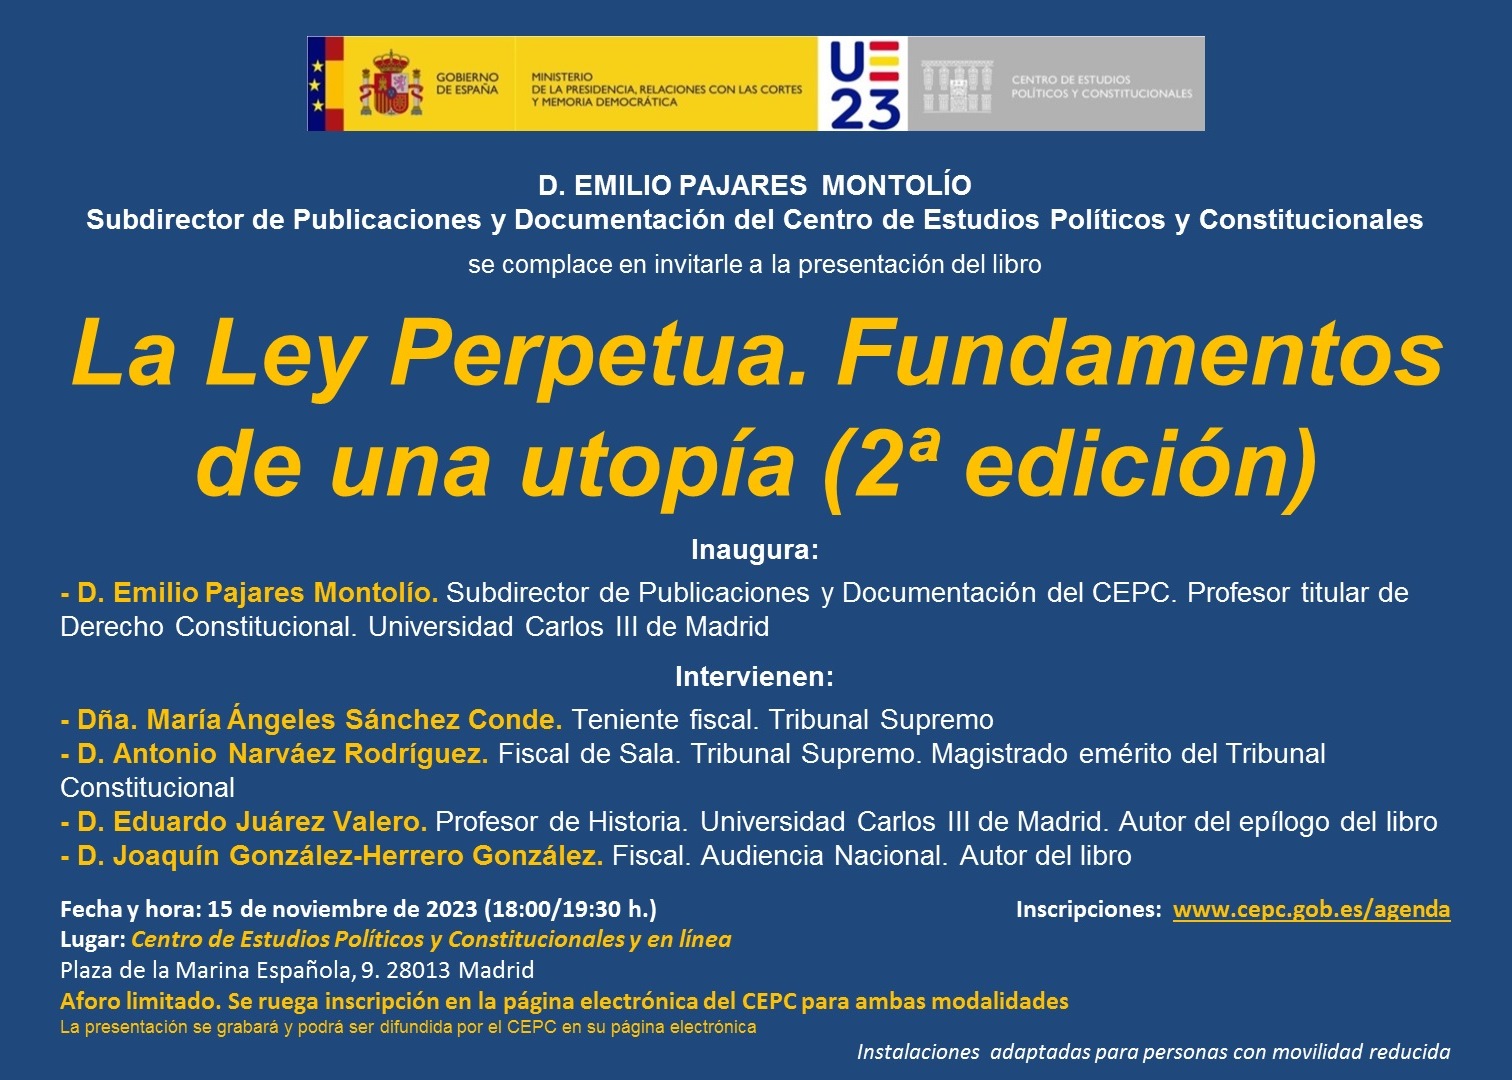 Presentación del libro "La Ley Perpetua. Fundamentos de una utopía (2ª edición)"